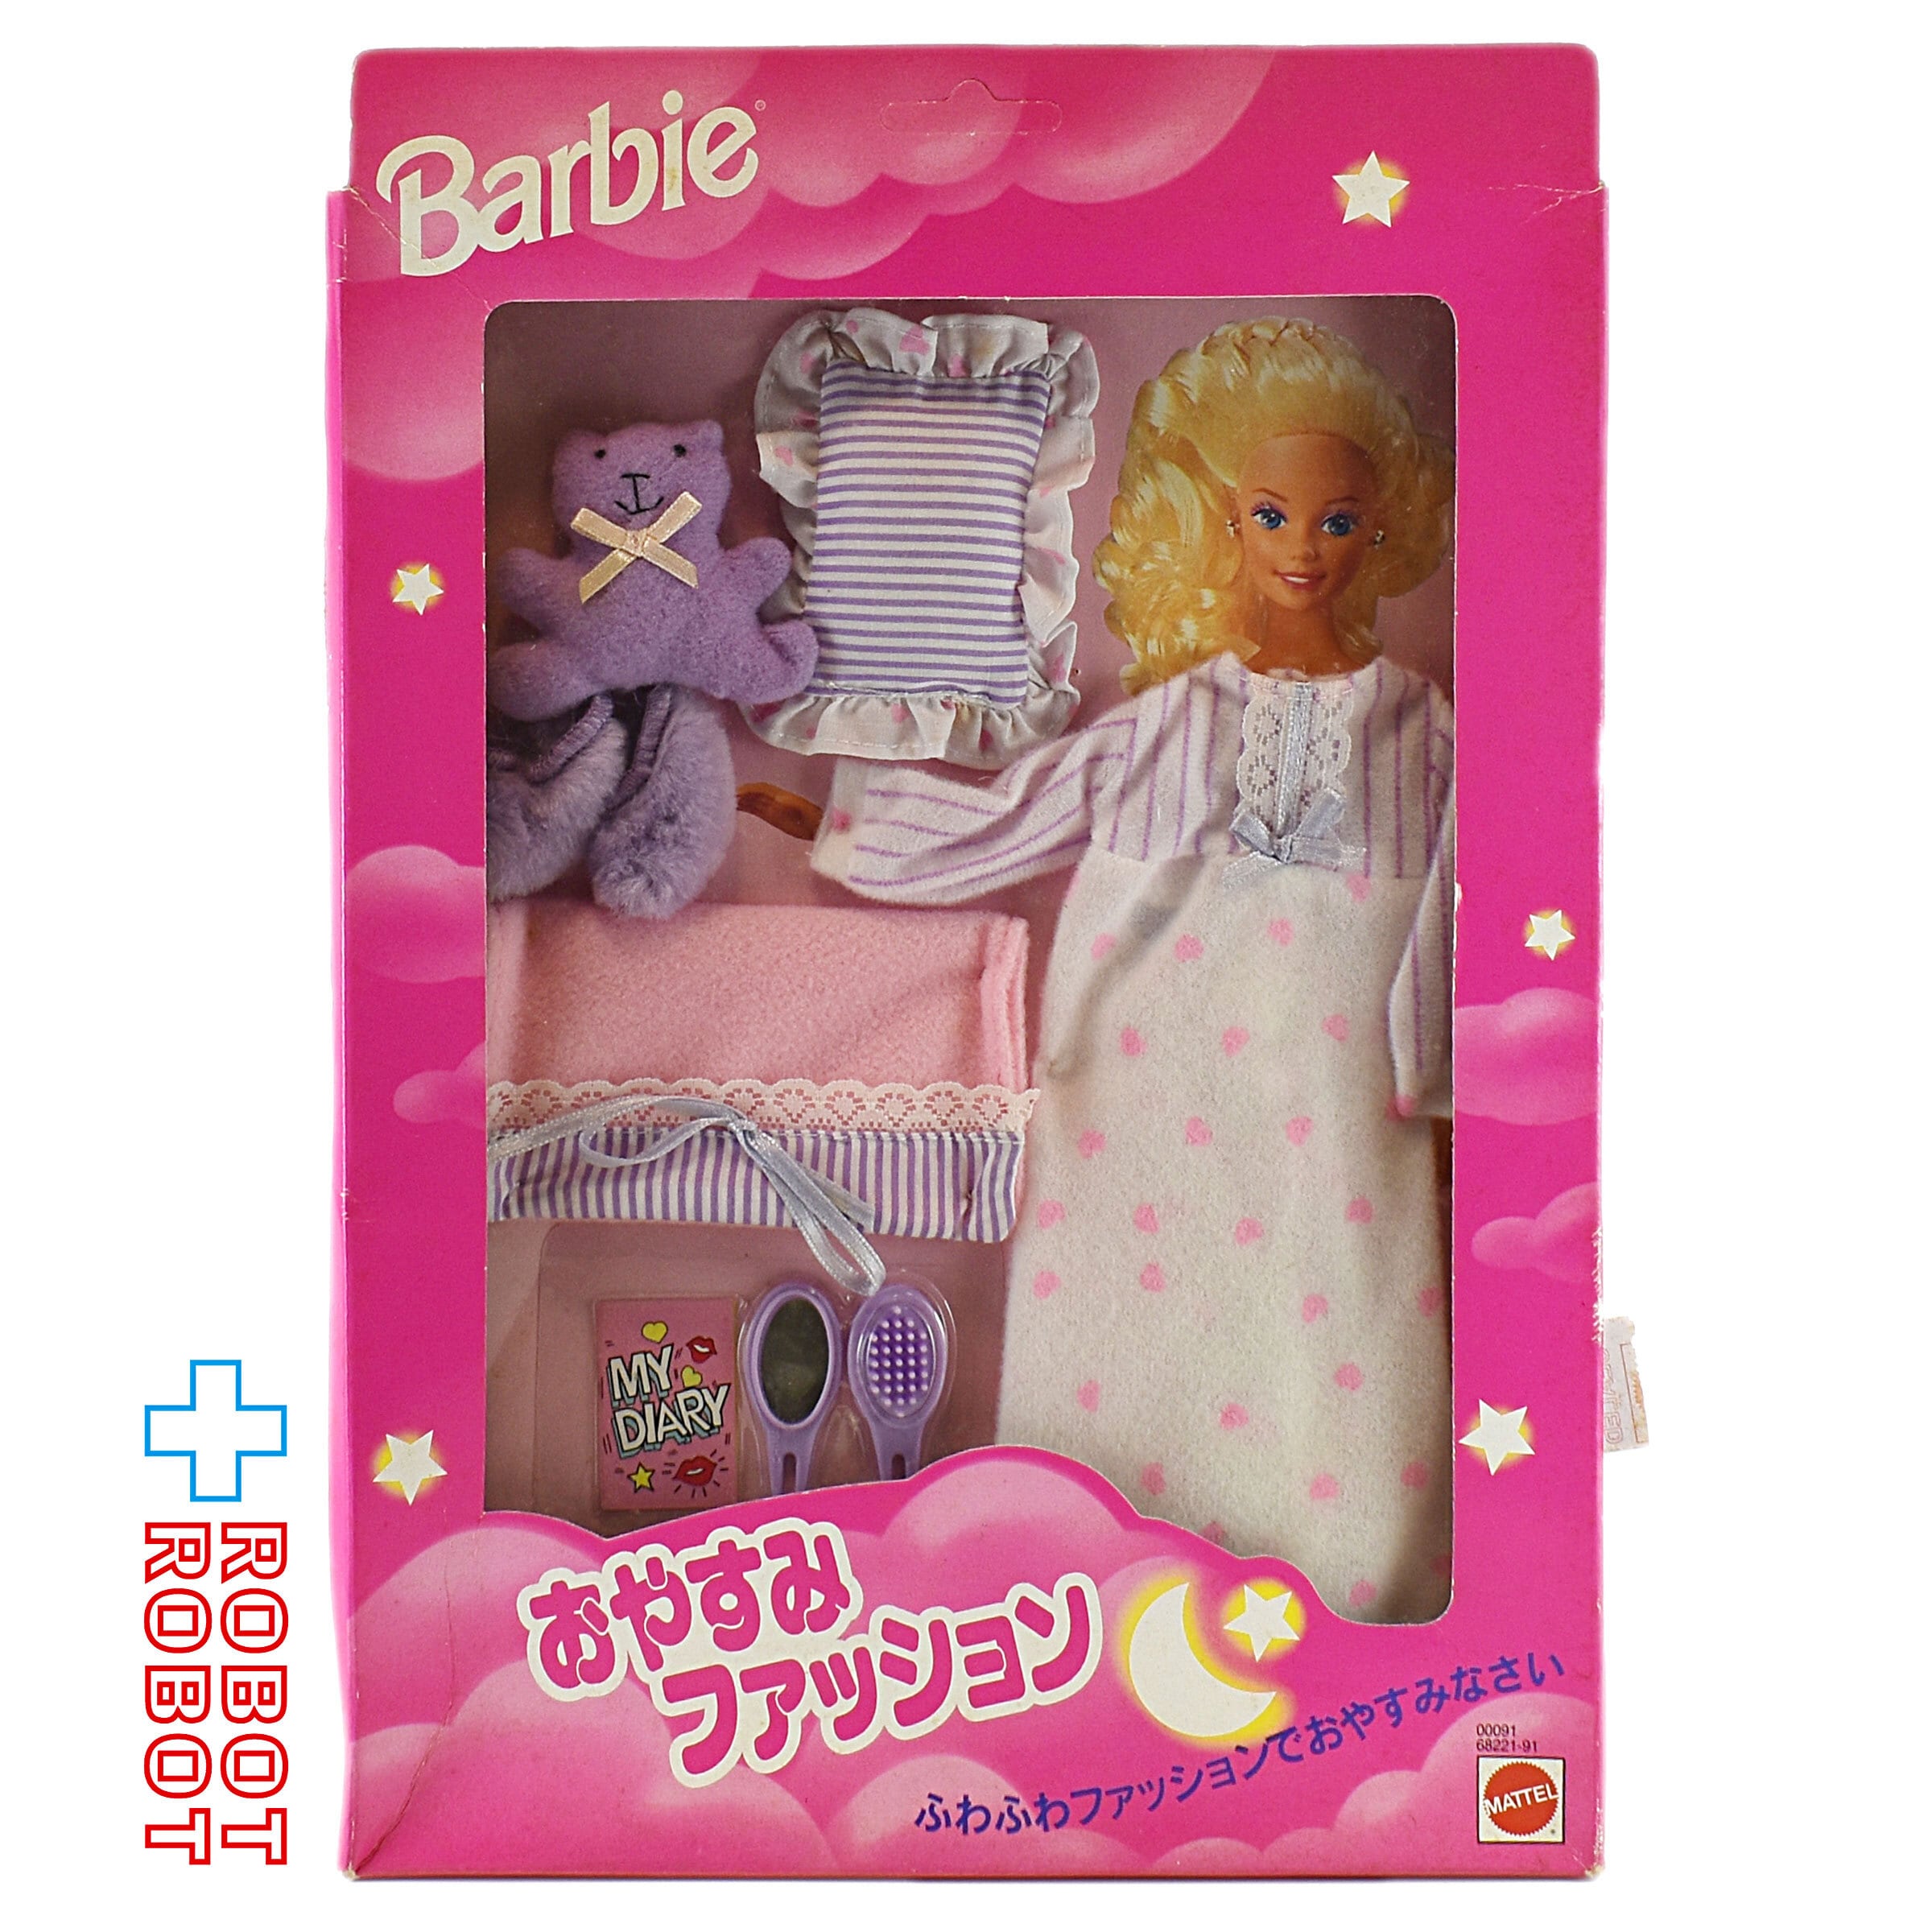 新型スマホOPPO Barbie(バービー) View Master Keychain - View-Master